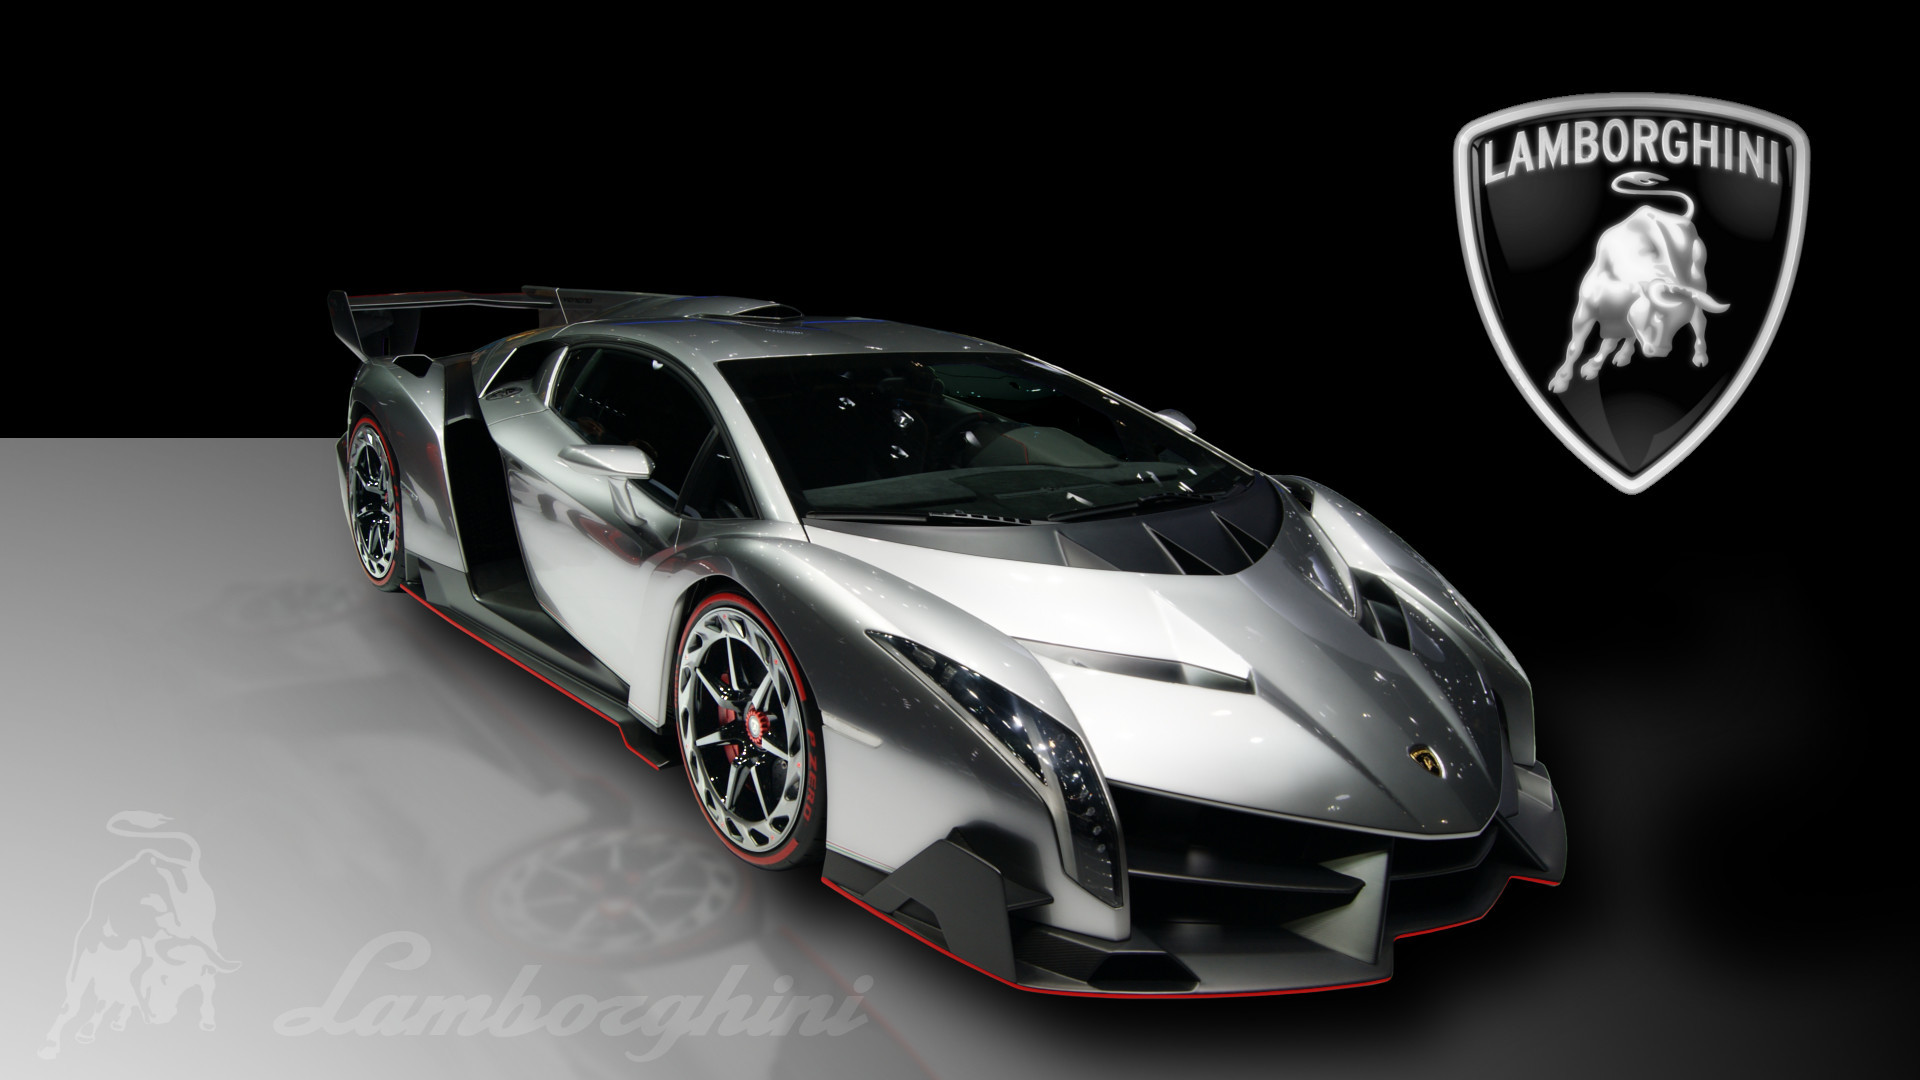 1920x1080  Lamborghini Veneno 2013 Exclusive HD Wallpapers #4110